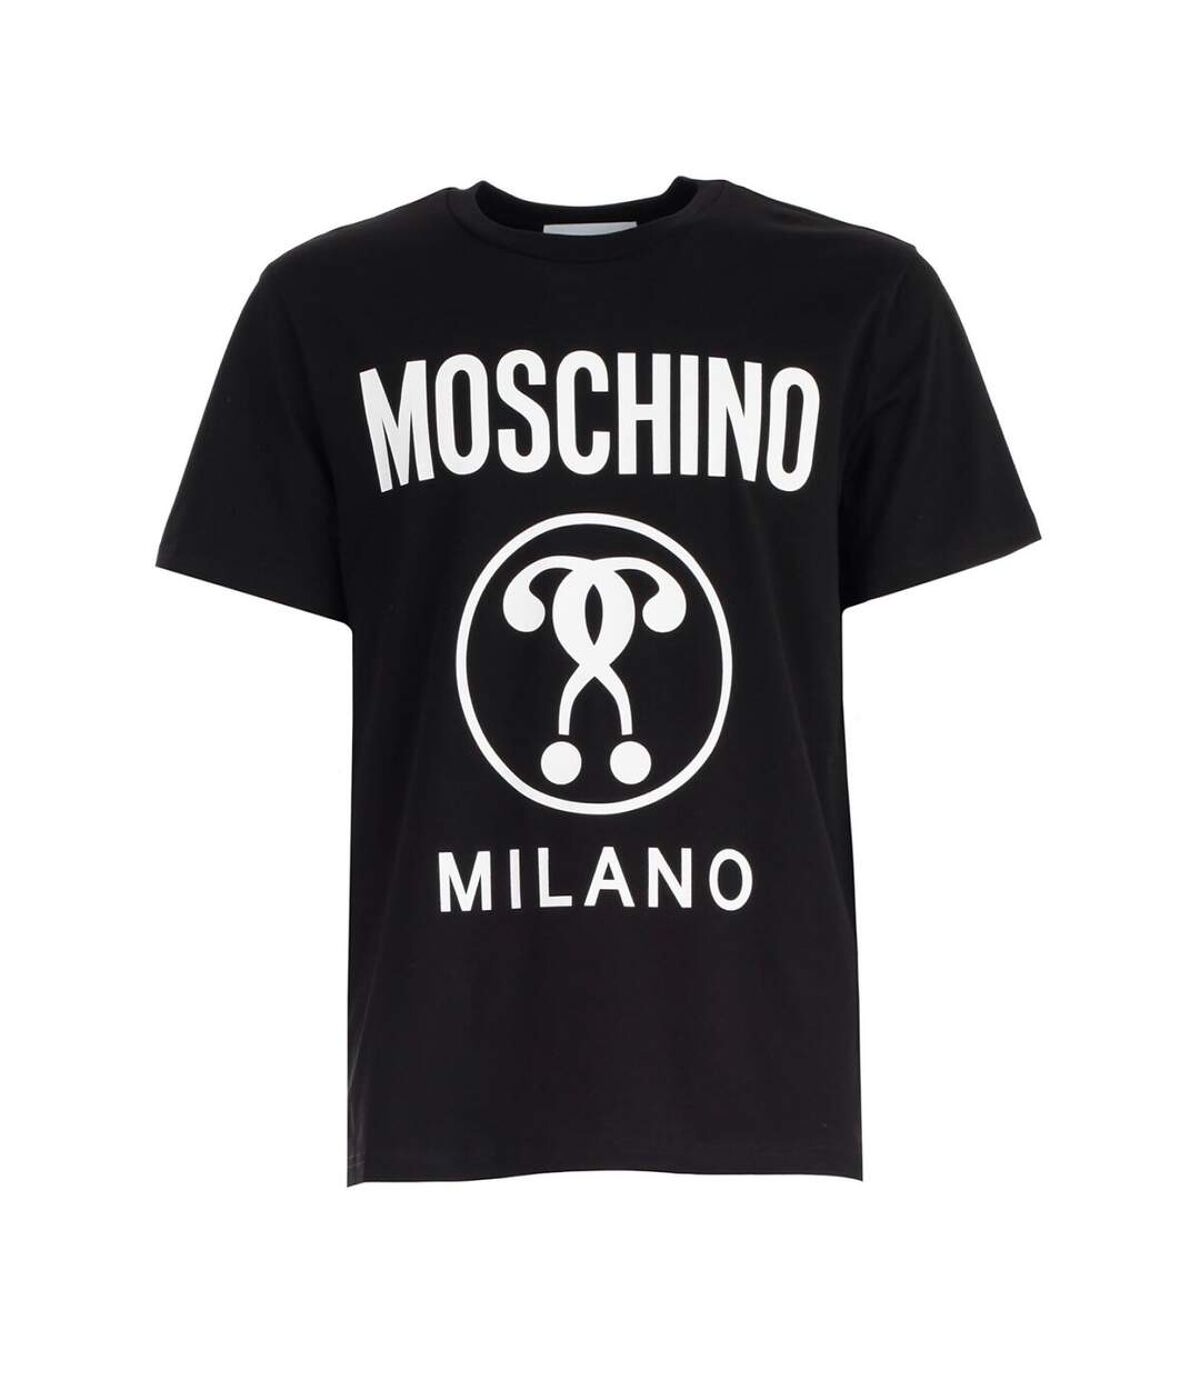 Tee shirt coton à gros logo imprimé  -  Moschino - Homme